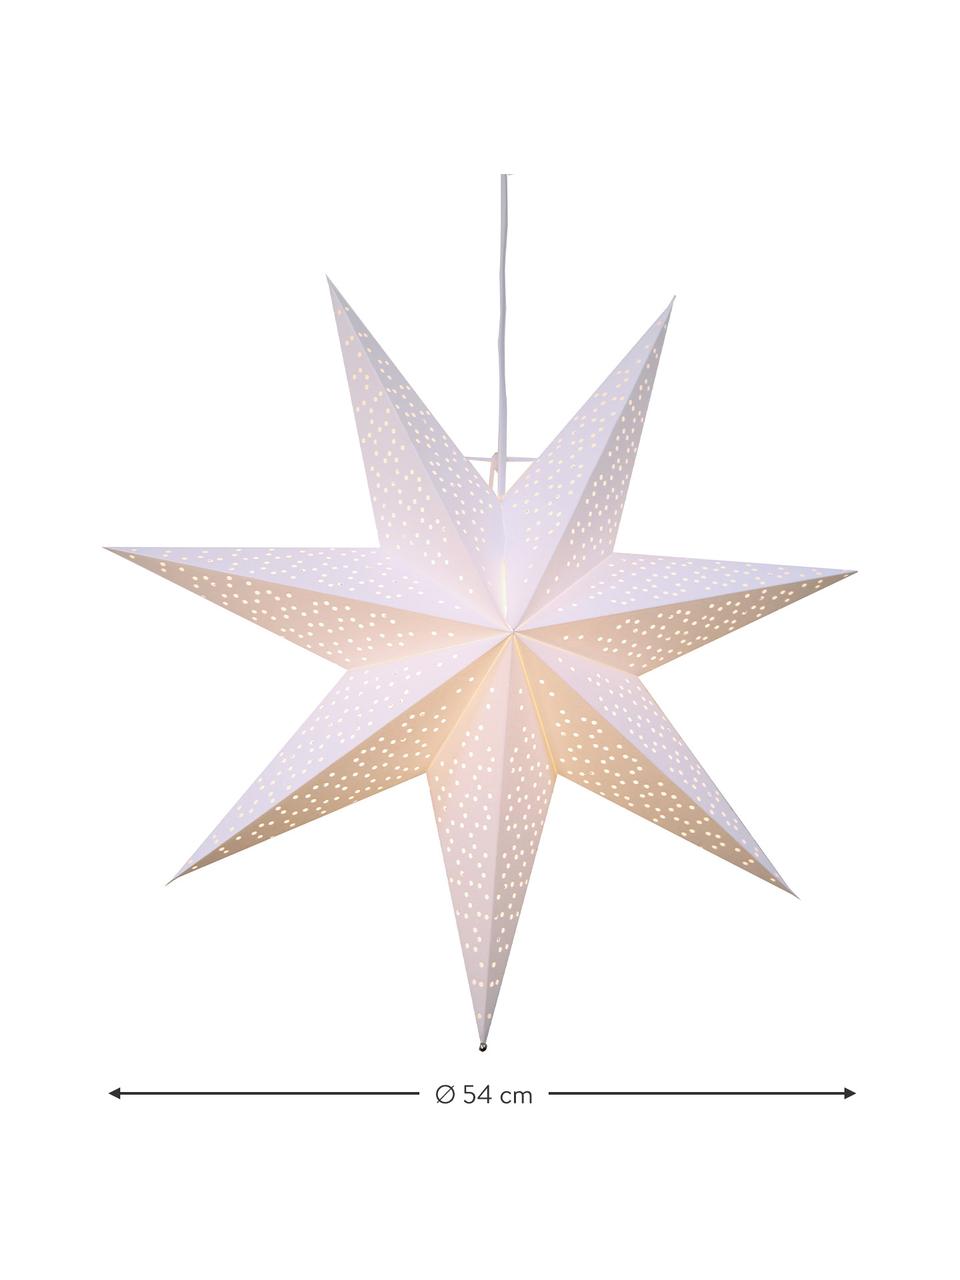 Svíticí papírová hvězda Dot, Bílá, Ø 54 cm